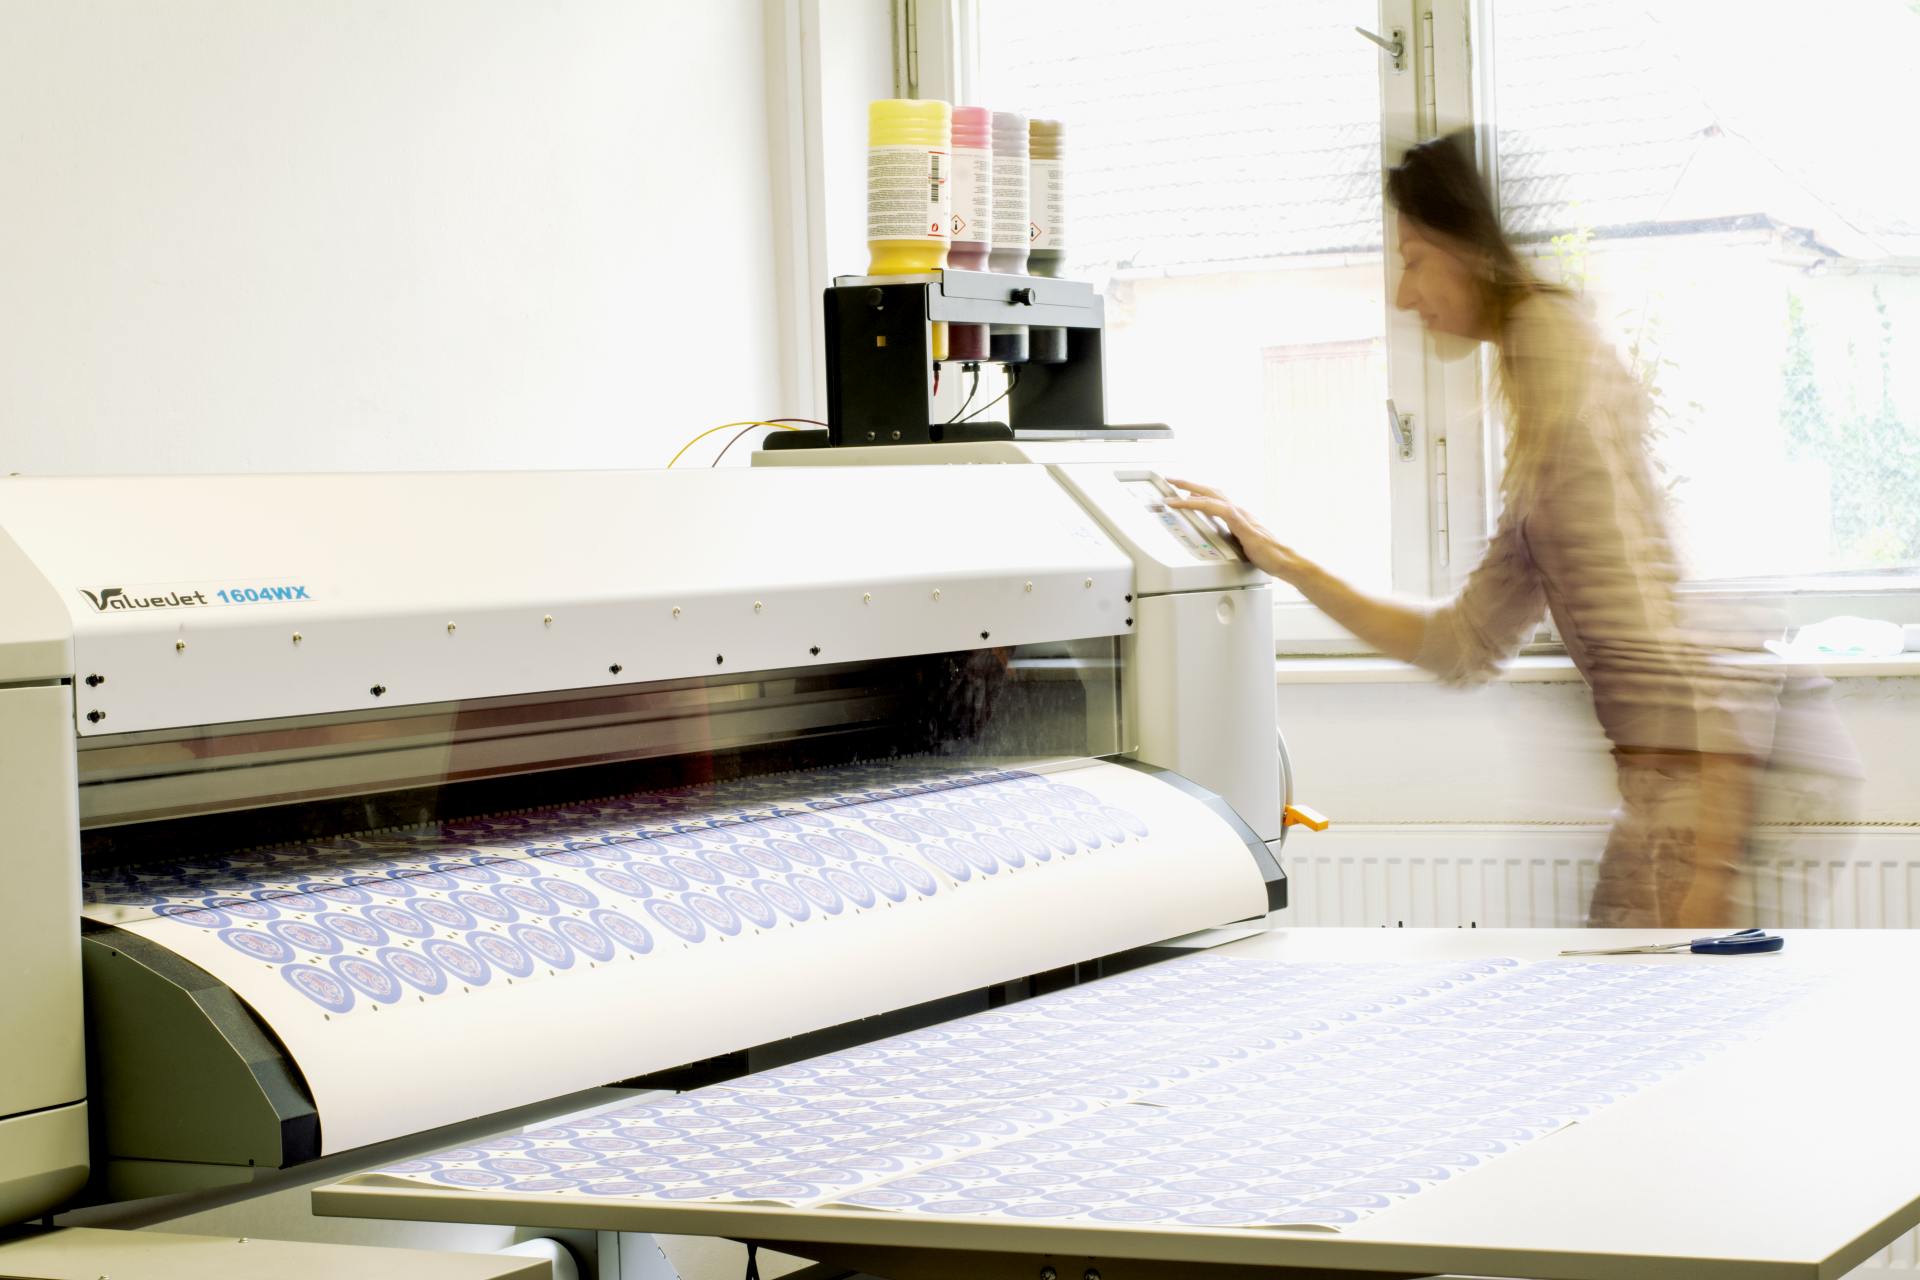 Sítotisk na textil stroj a výroba